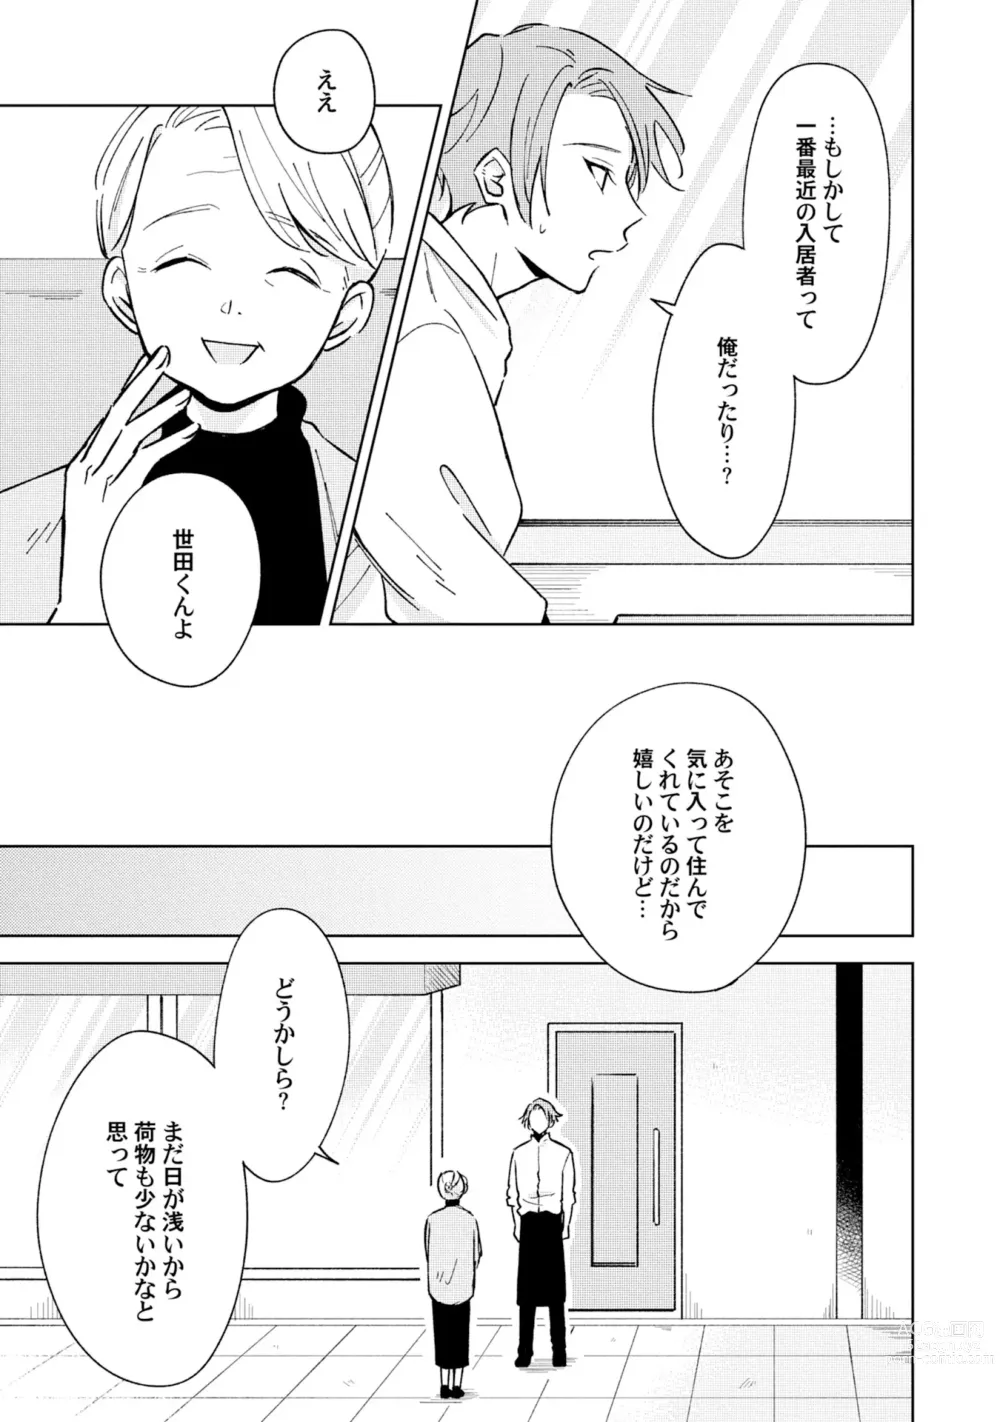 Page 11 of manga Toho 3-byou no Trouble Love Room 4